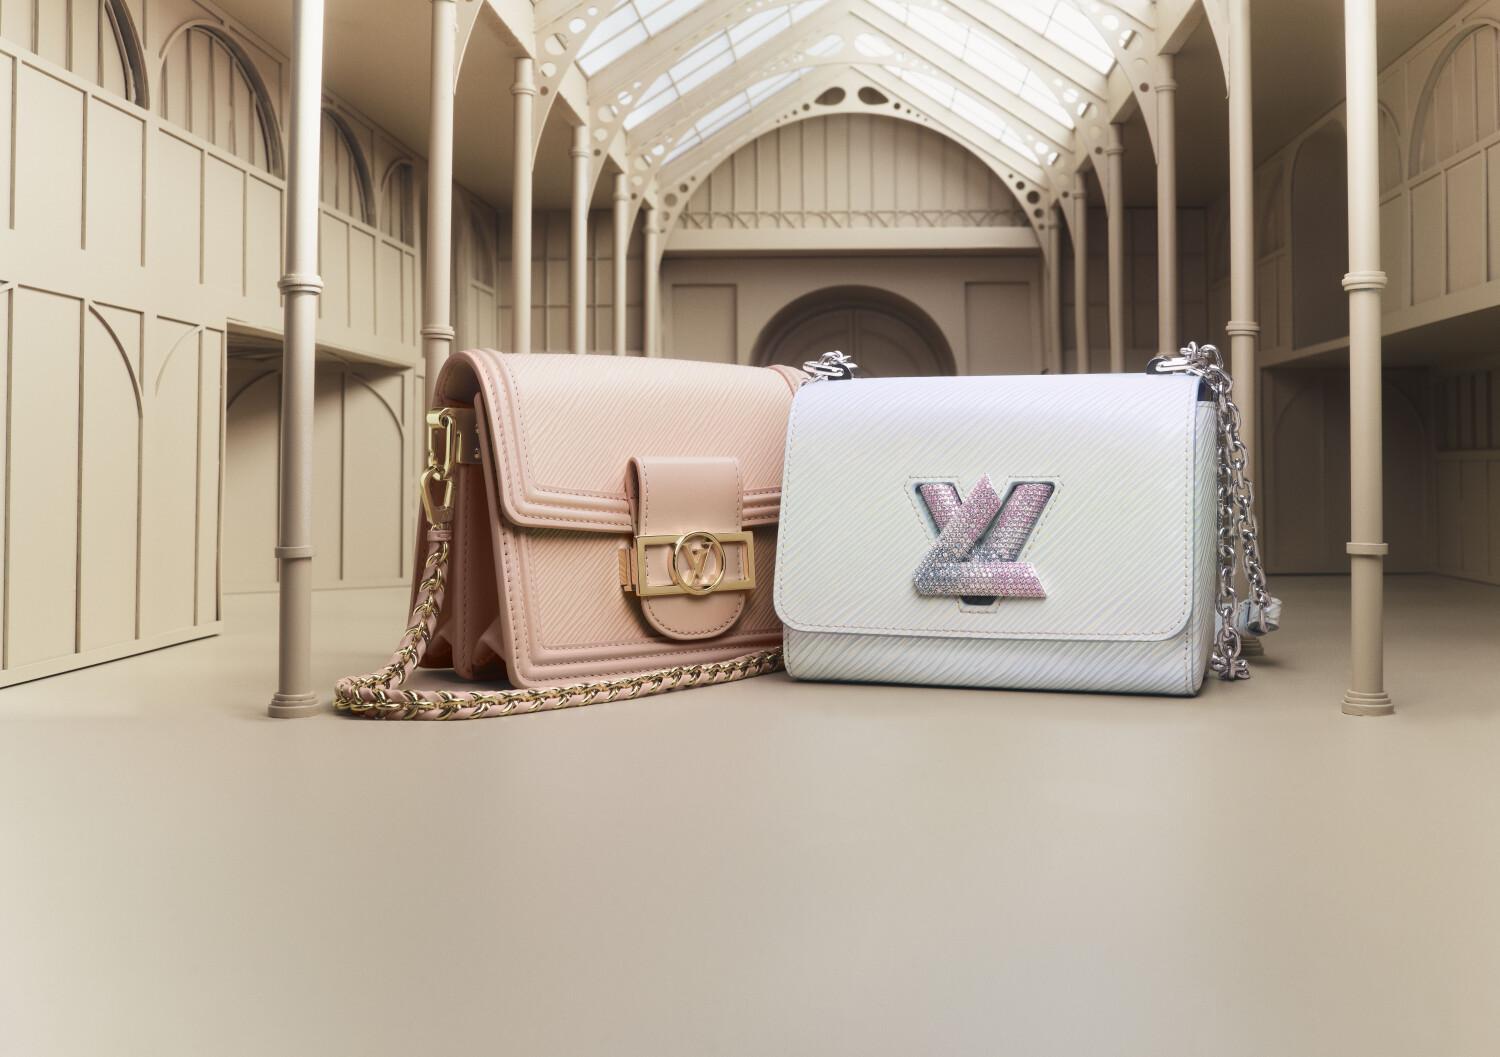 Louis Vuitton giới thiệu vũ trụ quà tặng đa sắc màu cho mùa lễ hội